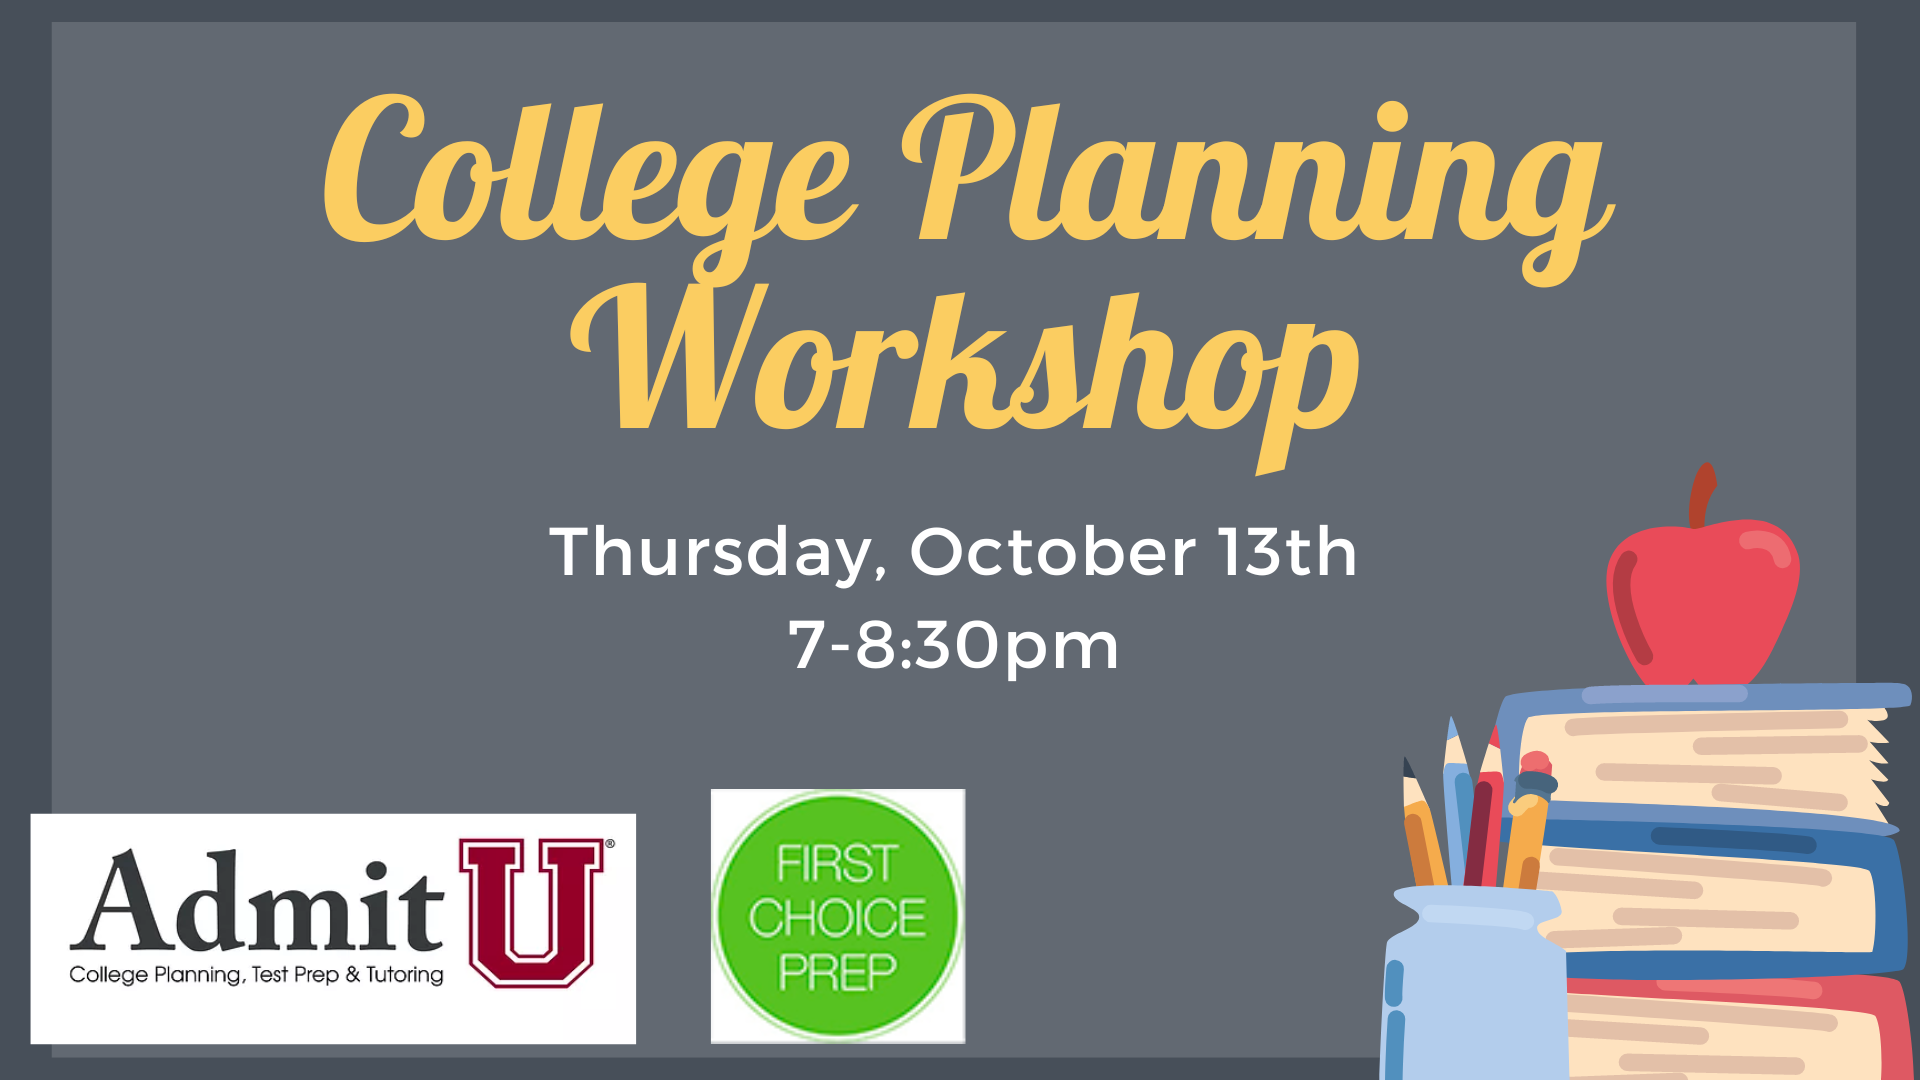 College Planning Workshop promo